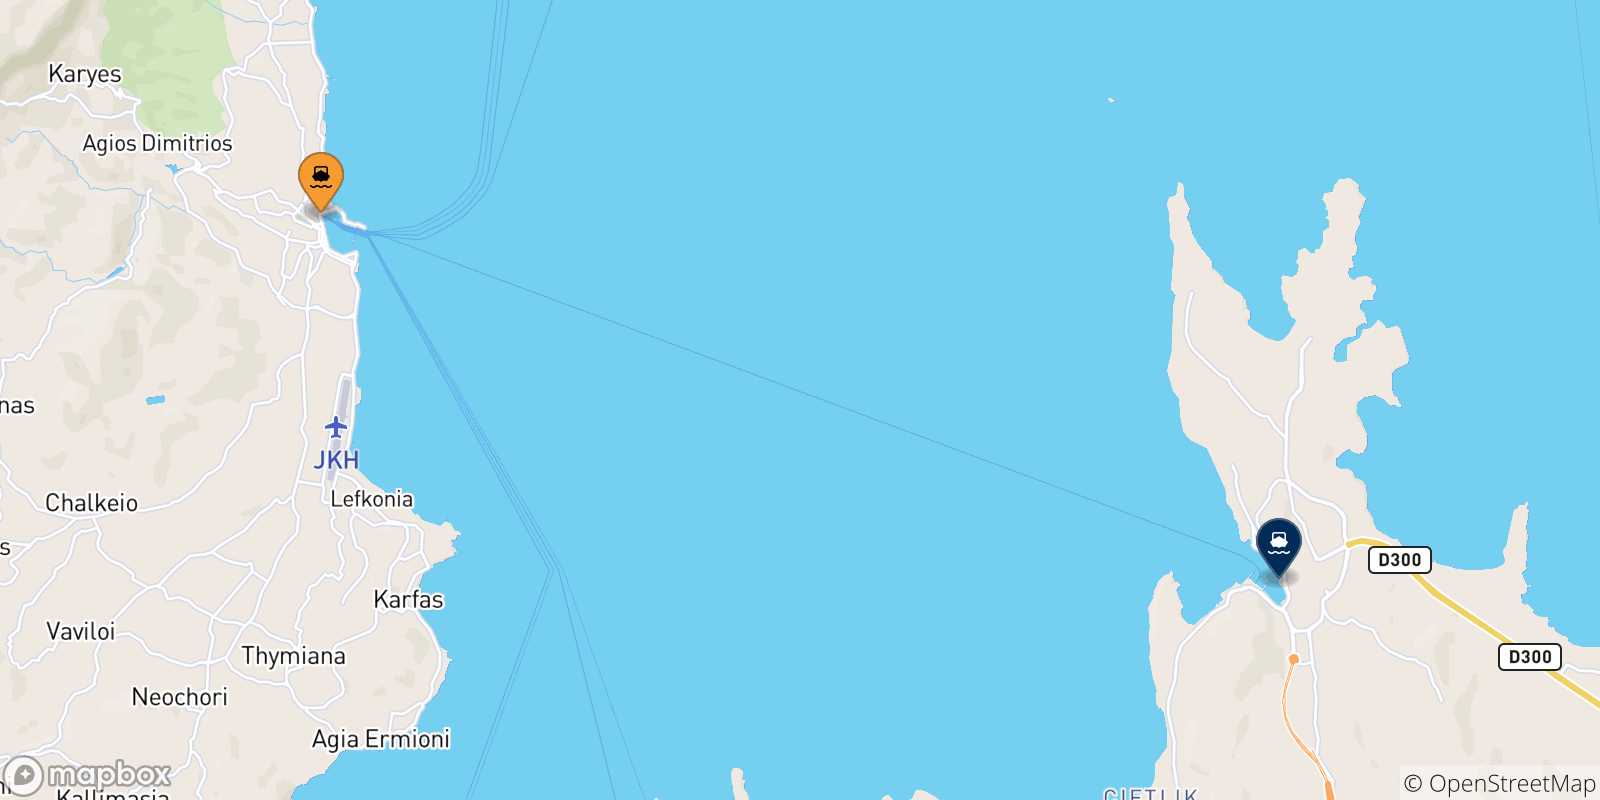 Mappa delle possibili rotte tra Chios e la Turchia